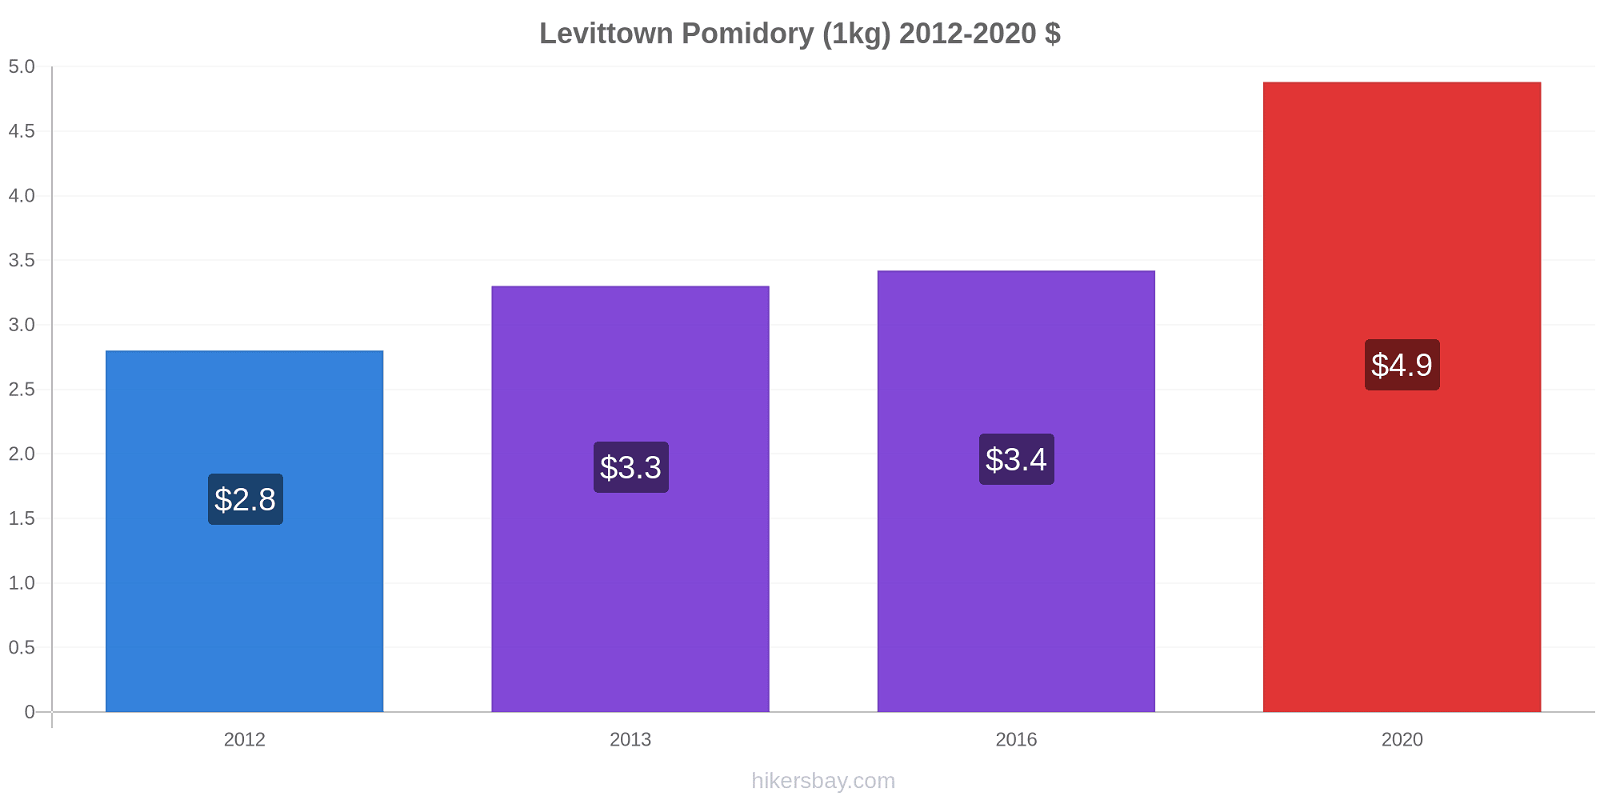 Levittown zmiany cen Pomidory (1kg) hikersbay.com